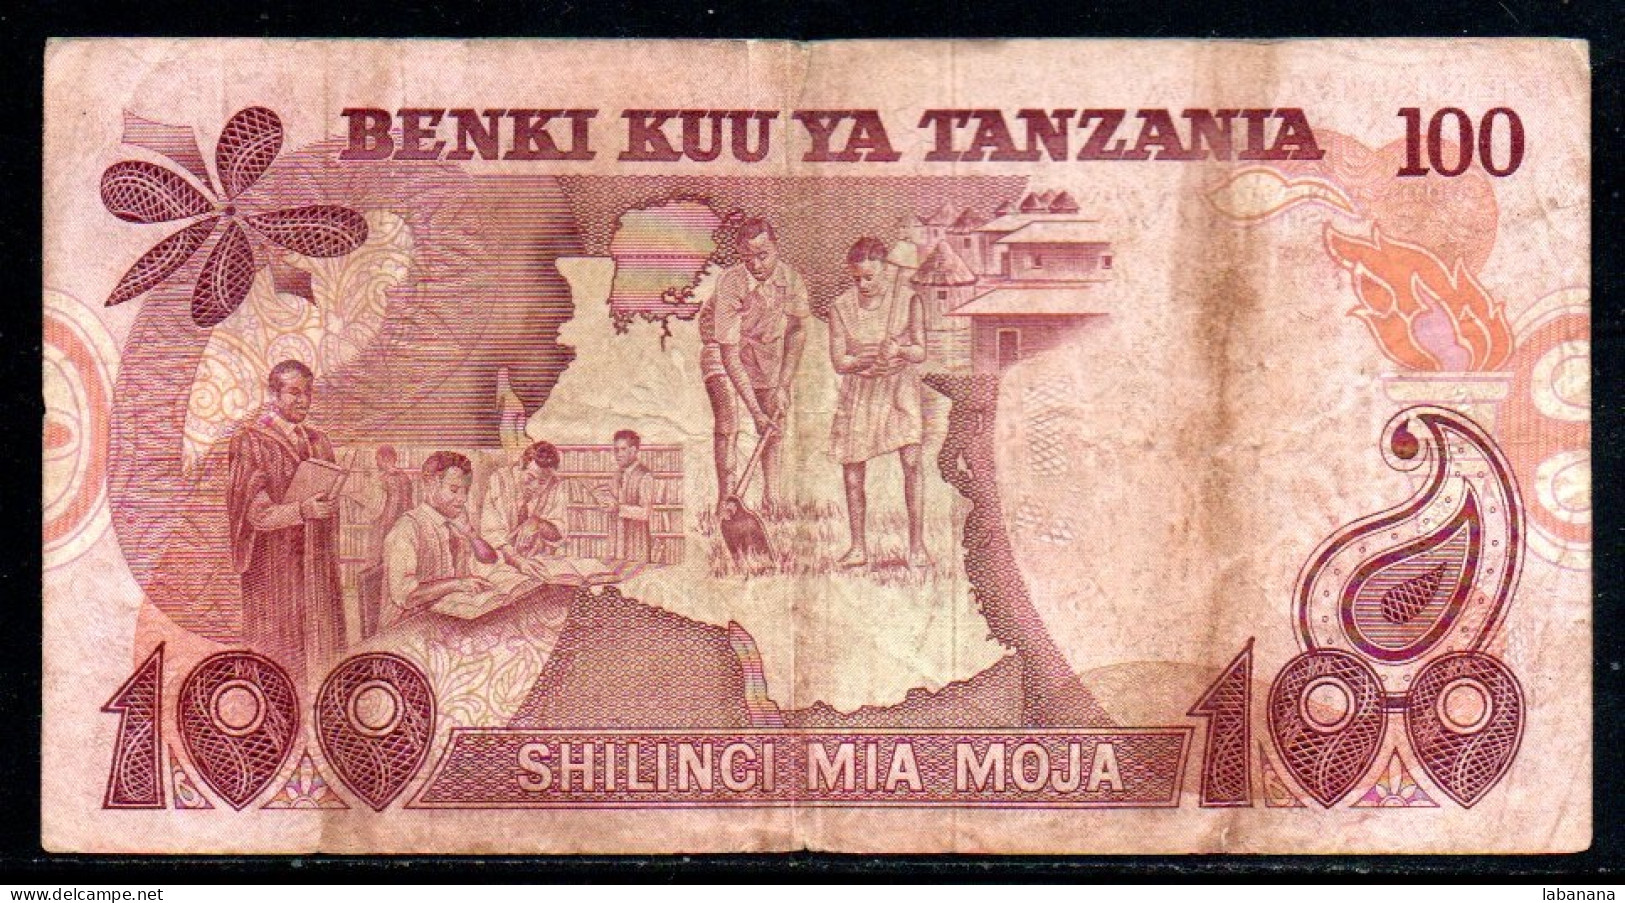 659-Tanzanie 100 Shilingi 1977 DV716 Sig.6 - Tanzania